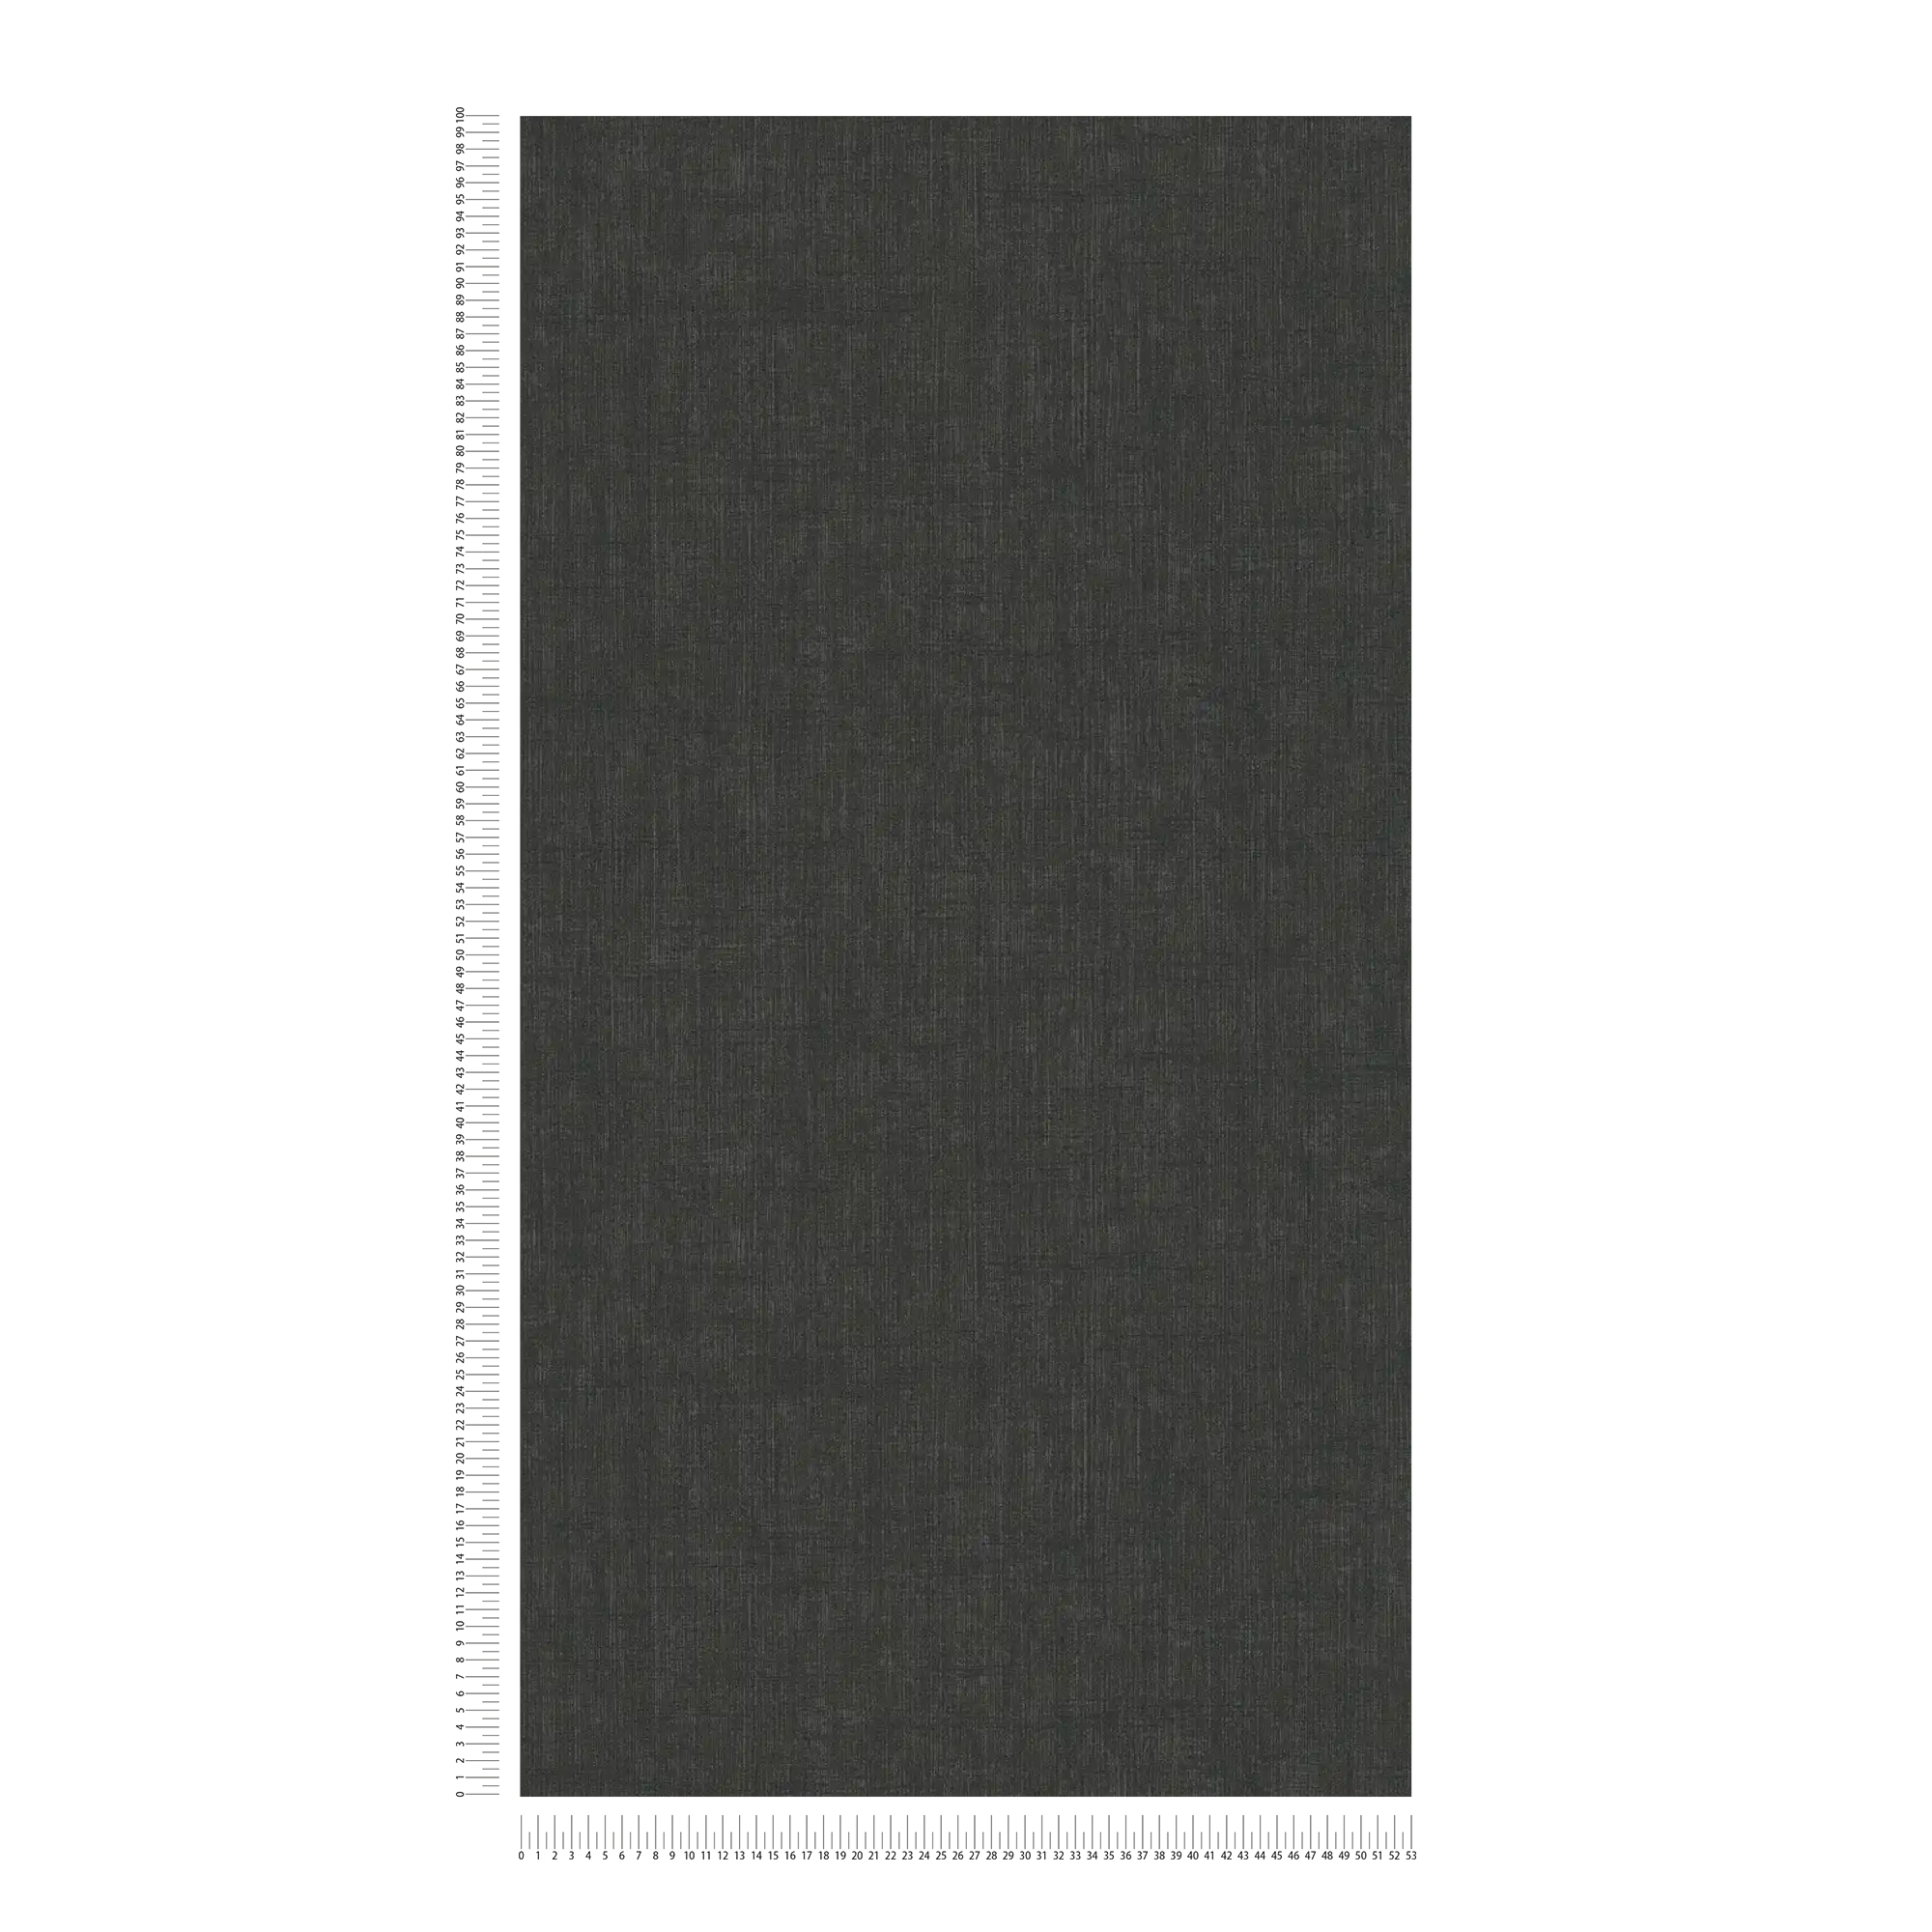             Papier peint intissé noir avec motif textile chiné
        